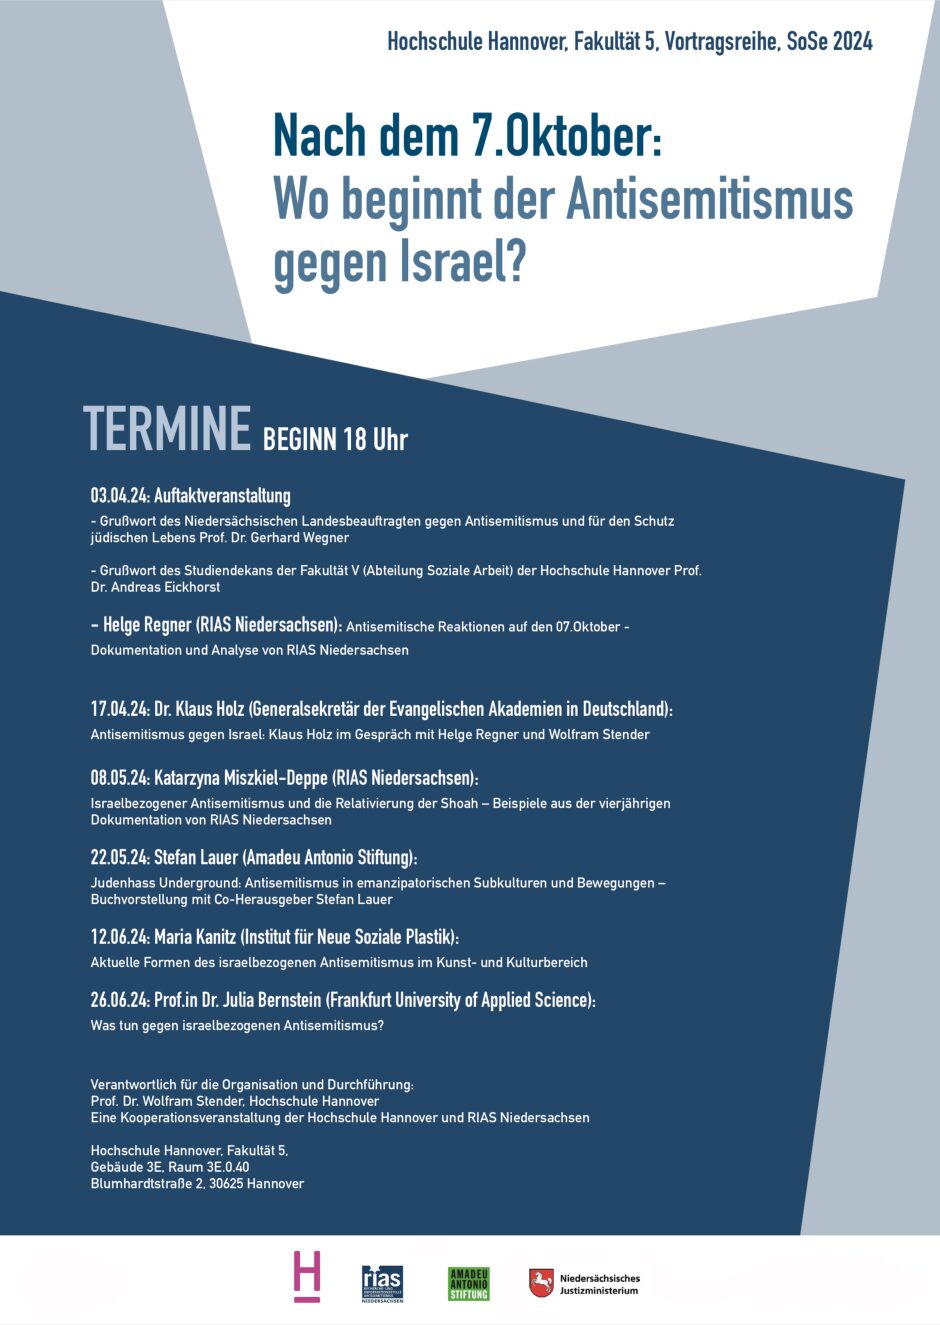 Israelbezogener Antisemitismus und Relativierung der Shoah – Beispiele aus der vierjährigen Dokumentation von RIAS Niedersachsen (mit Katarzyna Miszkiel-Deppe)